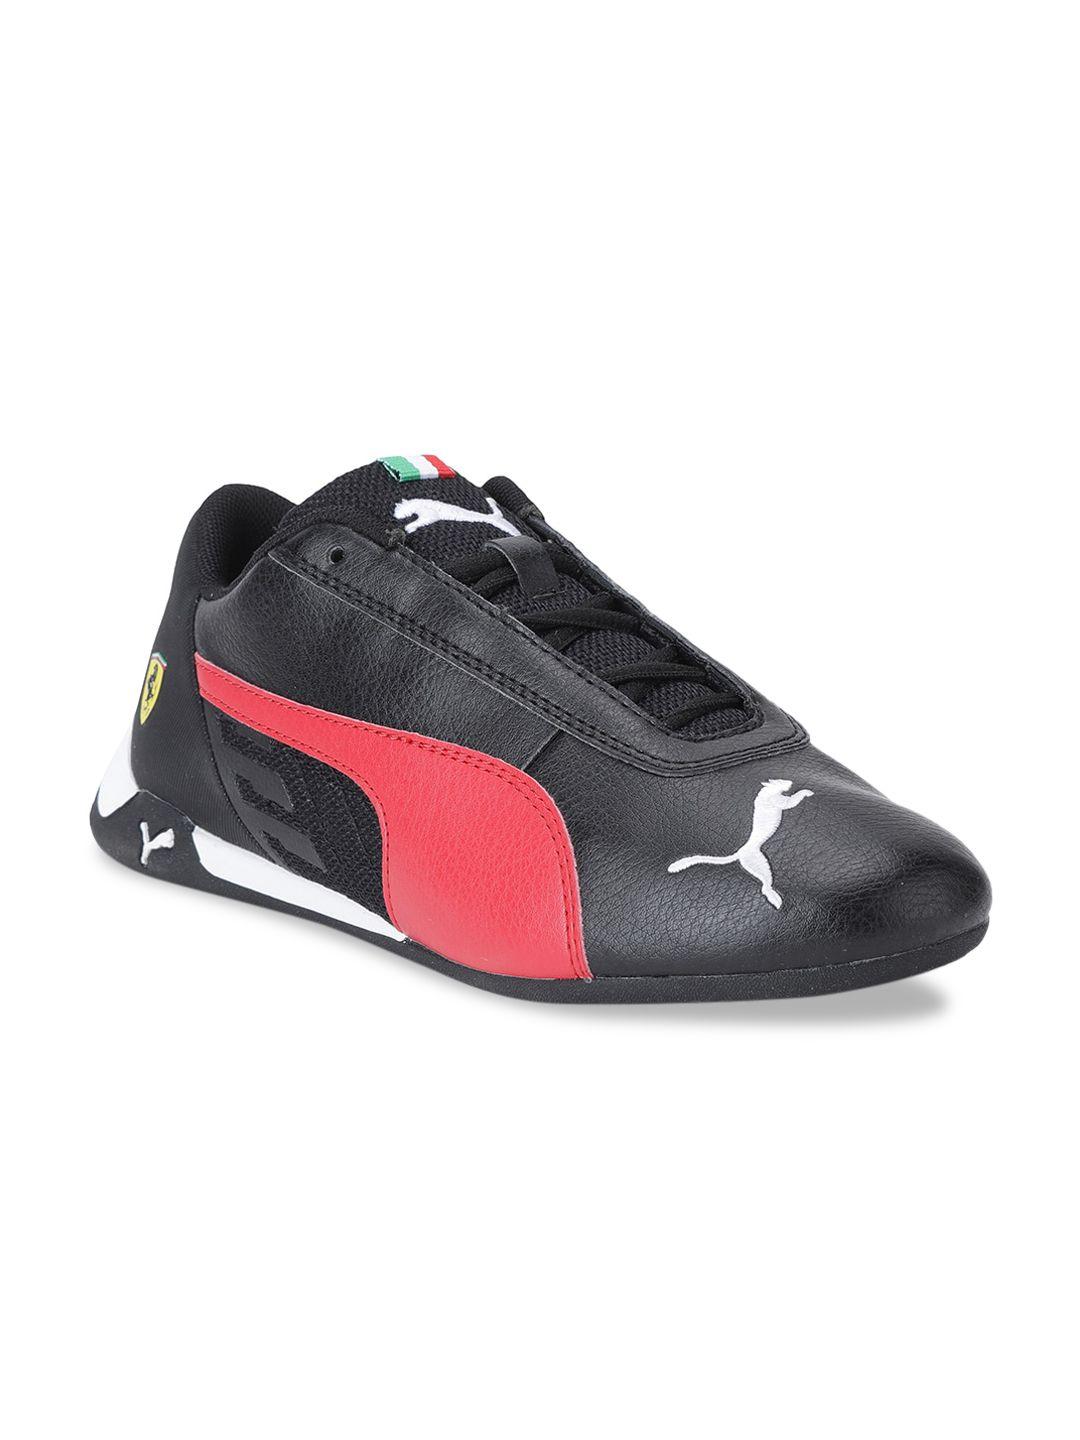 puma motorsport unisex kids black sneakers